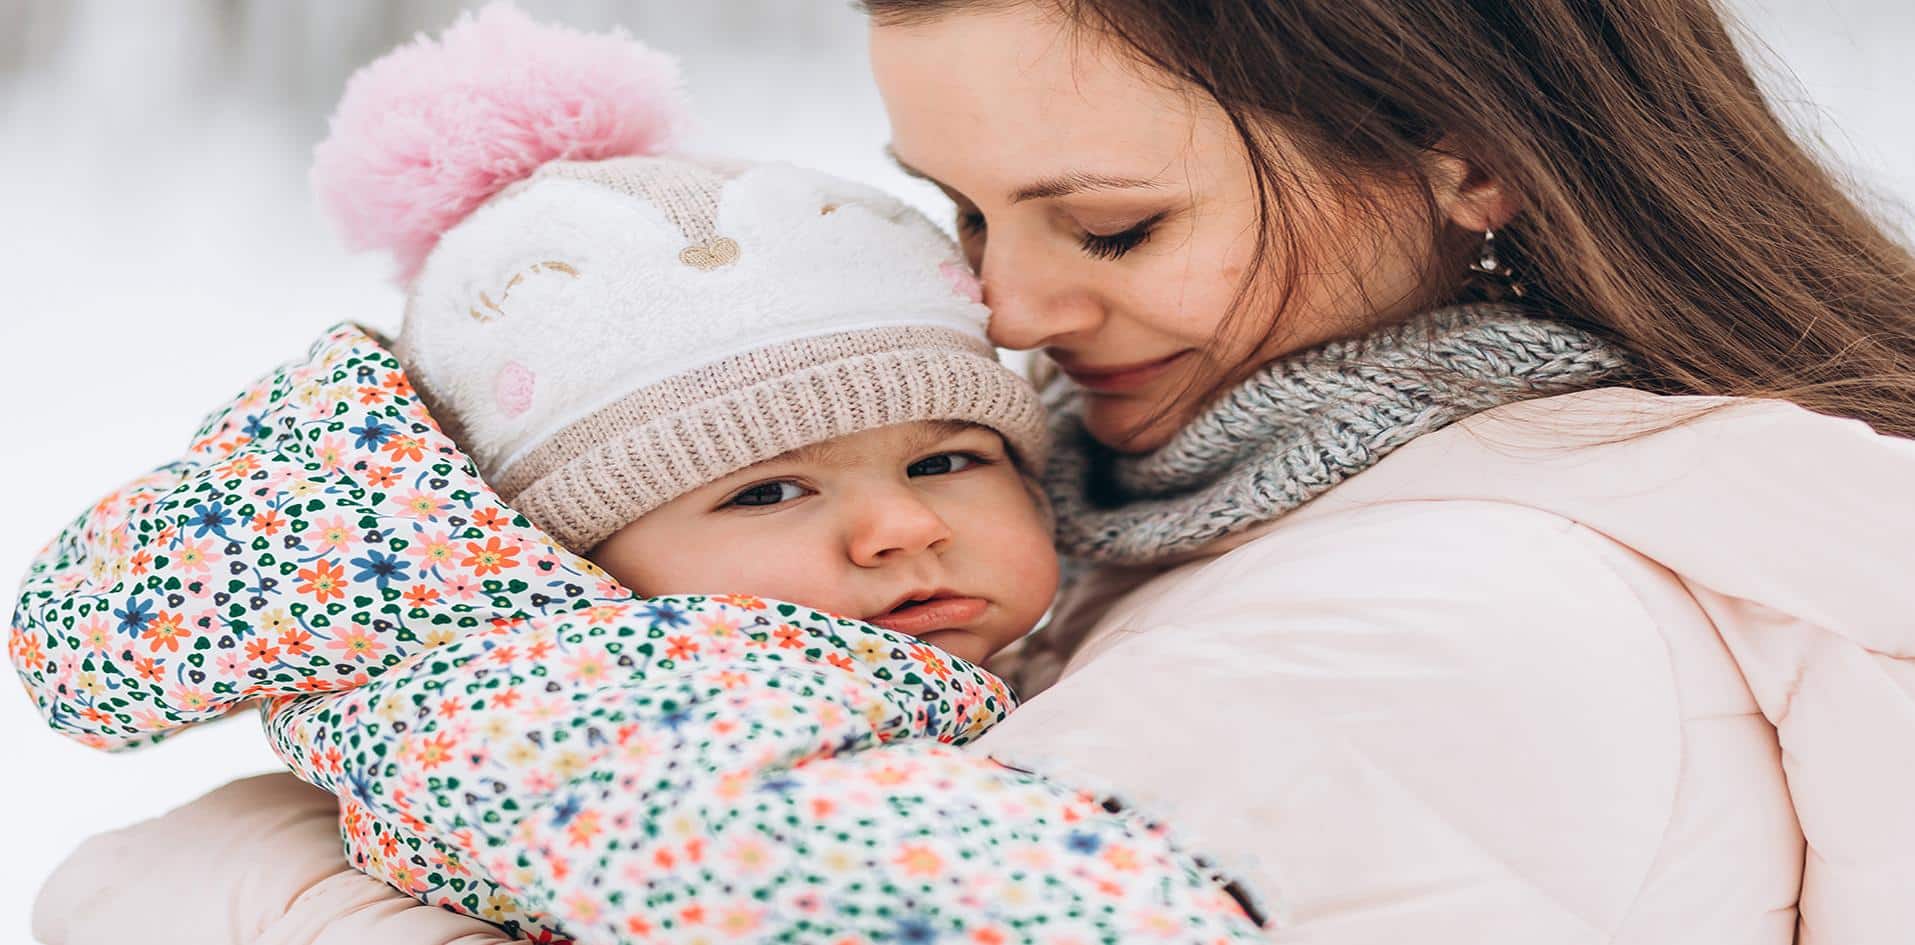 Os cuidados com o bebê devem ser reforçados no inverno